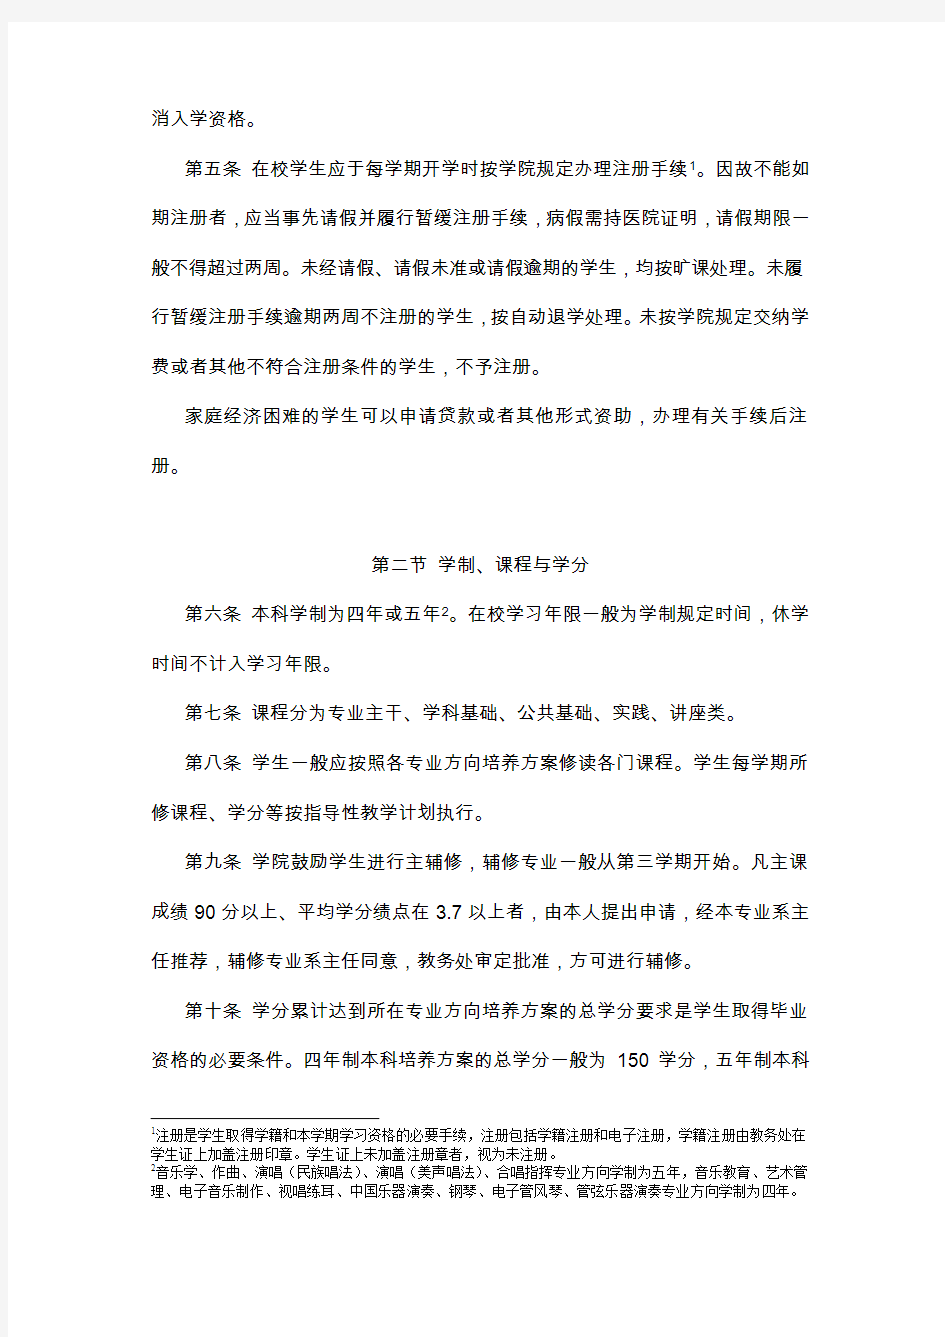 中国音乐学院本科生学籍管理条例